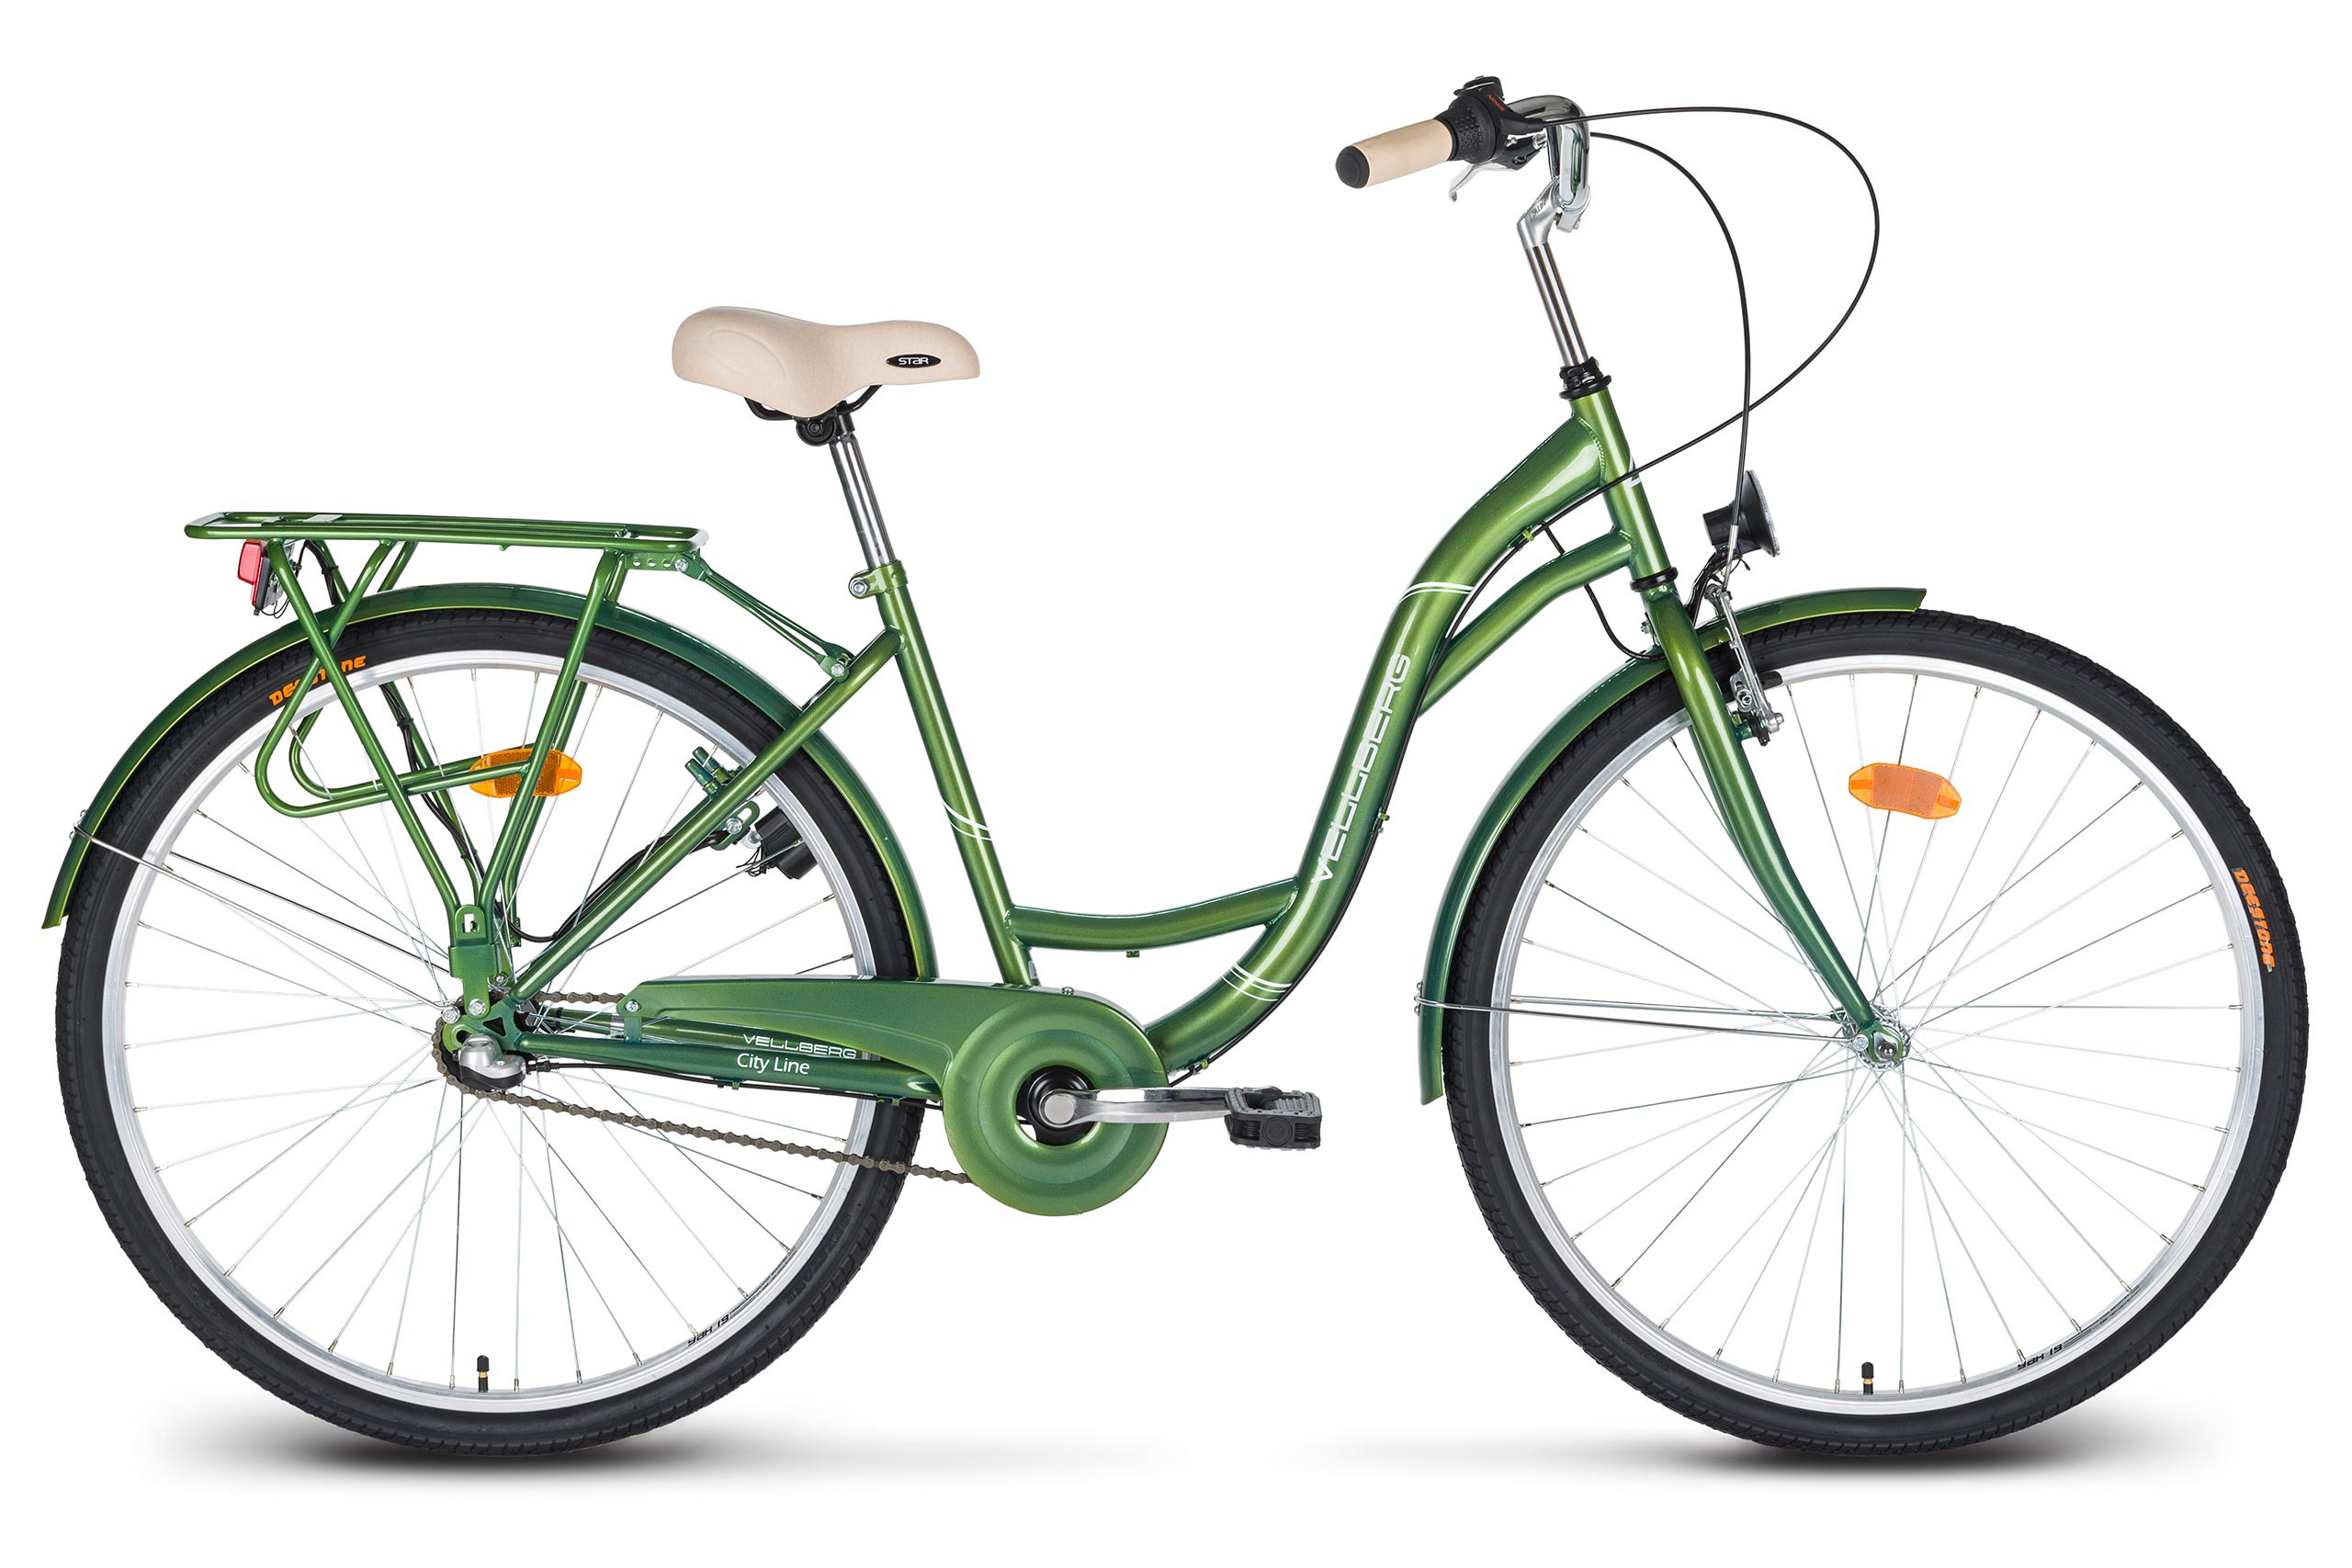 Велосипед купить скидка. Altair City line 28. Altair City 28 зеленый серый. Городской велосипед Аист ck9-344. Городской велосипед с планетарной втулкой.